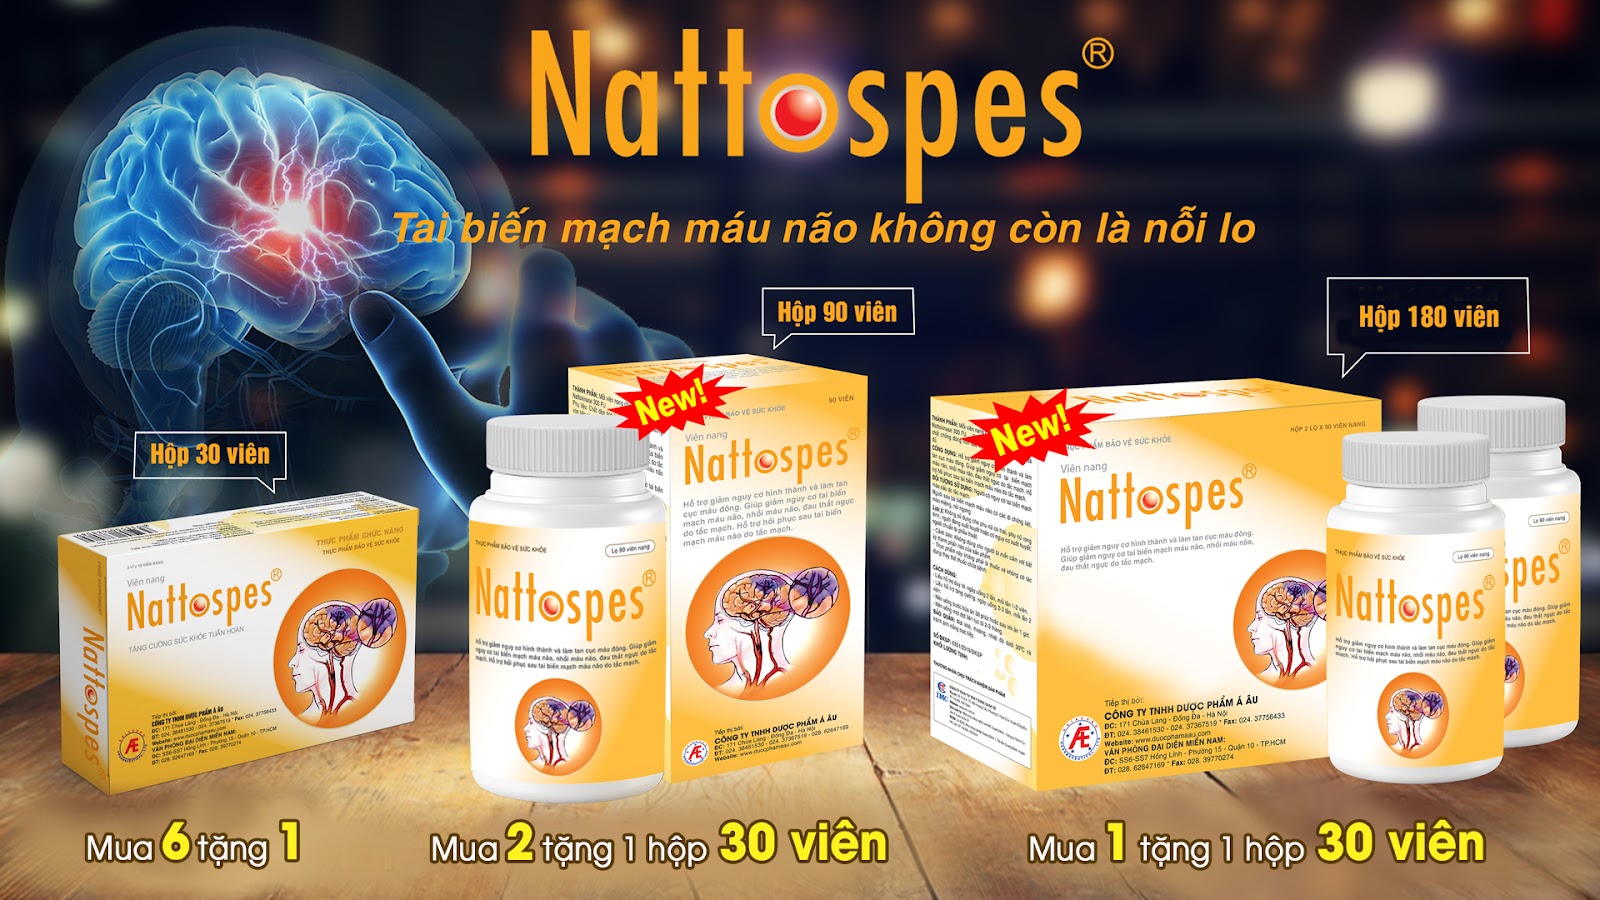 Nattospes giúp phòng ngừa và cải thiện tai biến mạch máu não